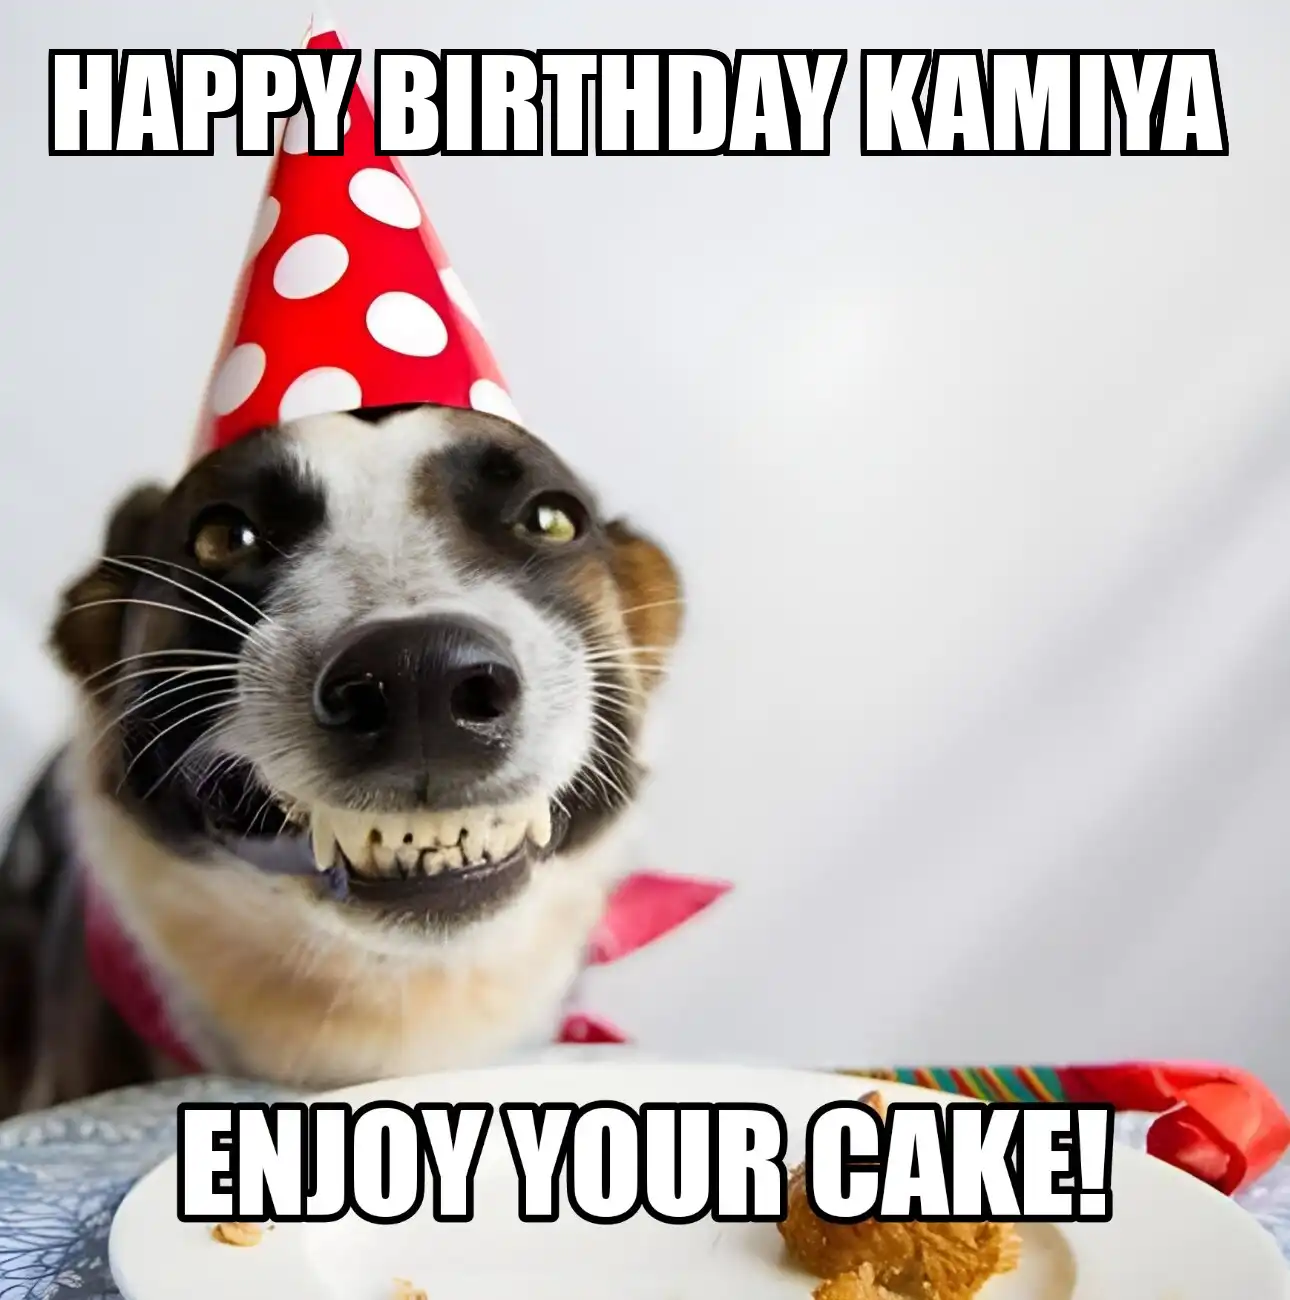 Happy Birthday Kamiya Enjoy Your Cake Dog Meme